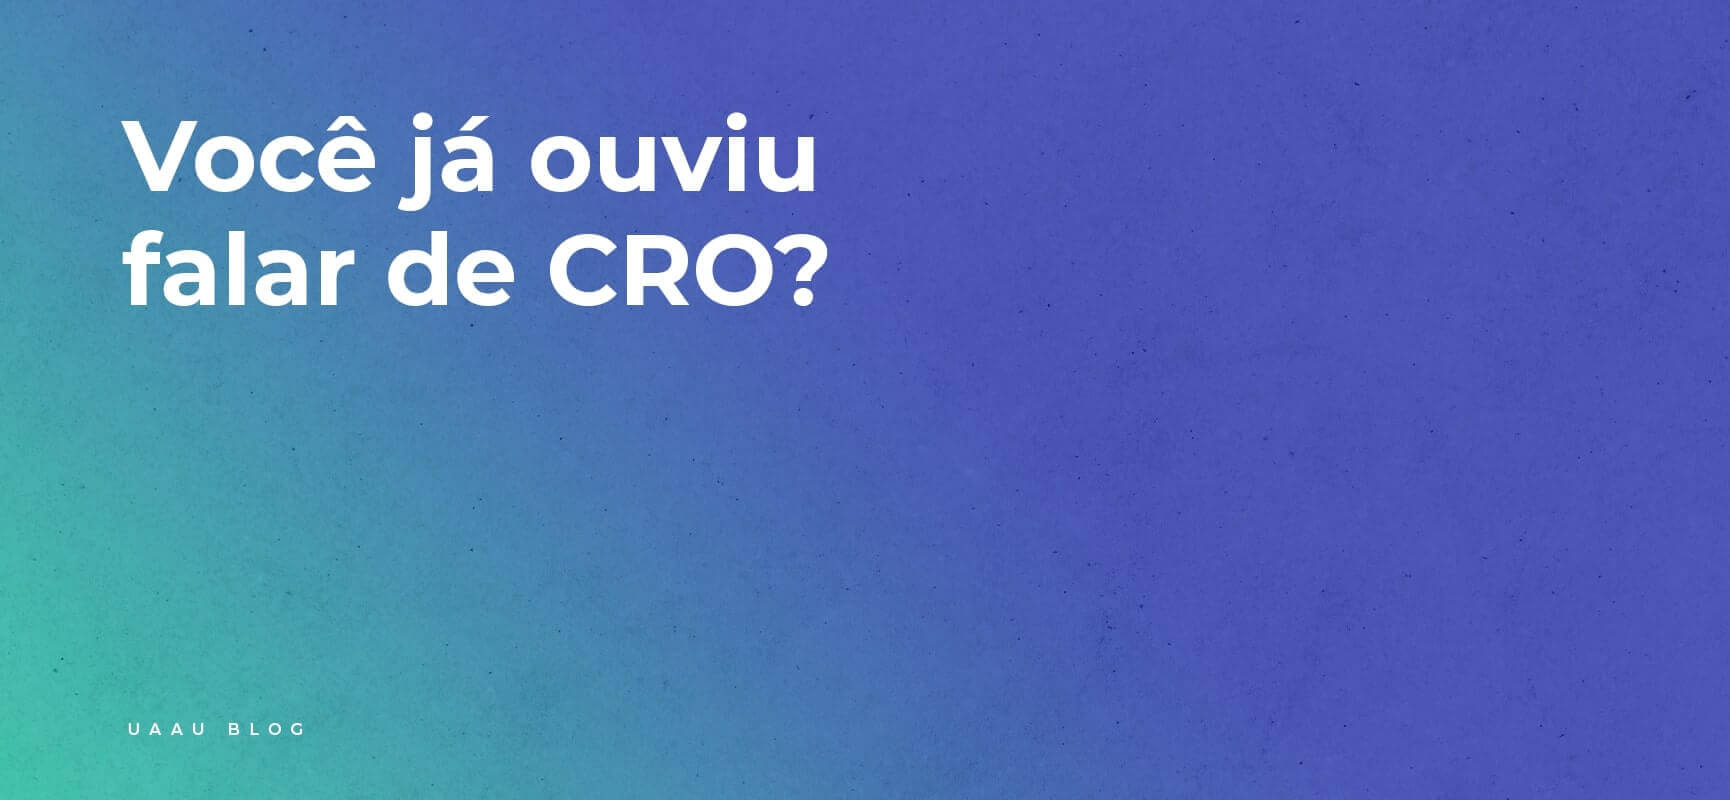 Você já ouviu falar de CRO?